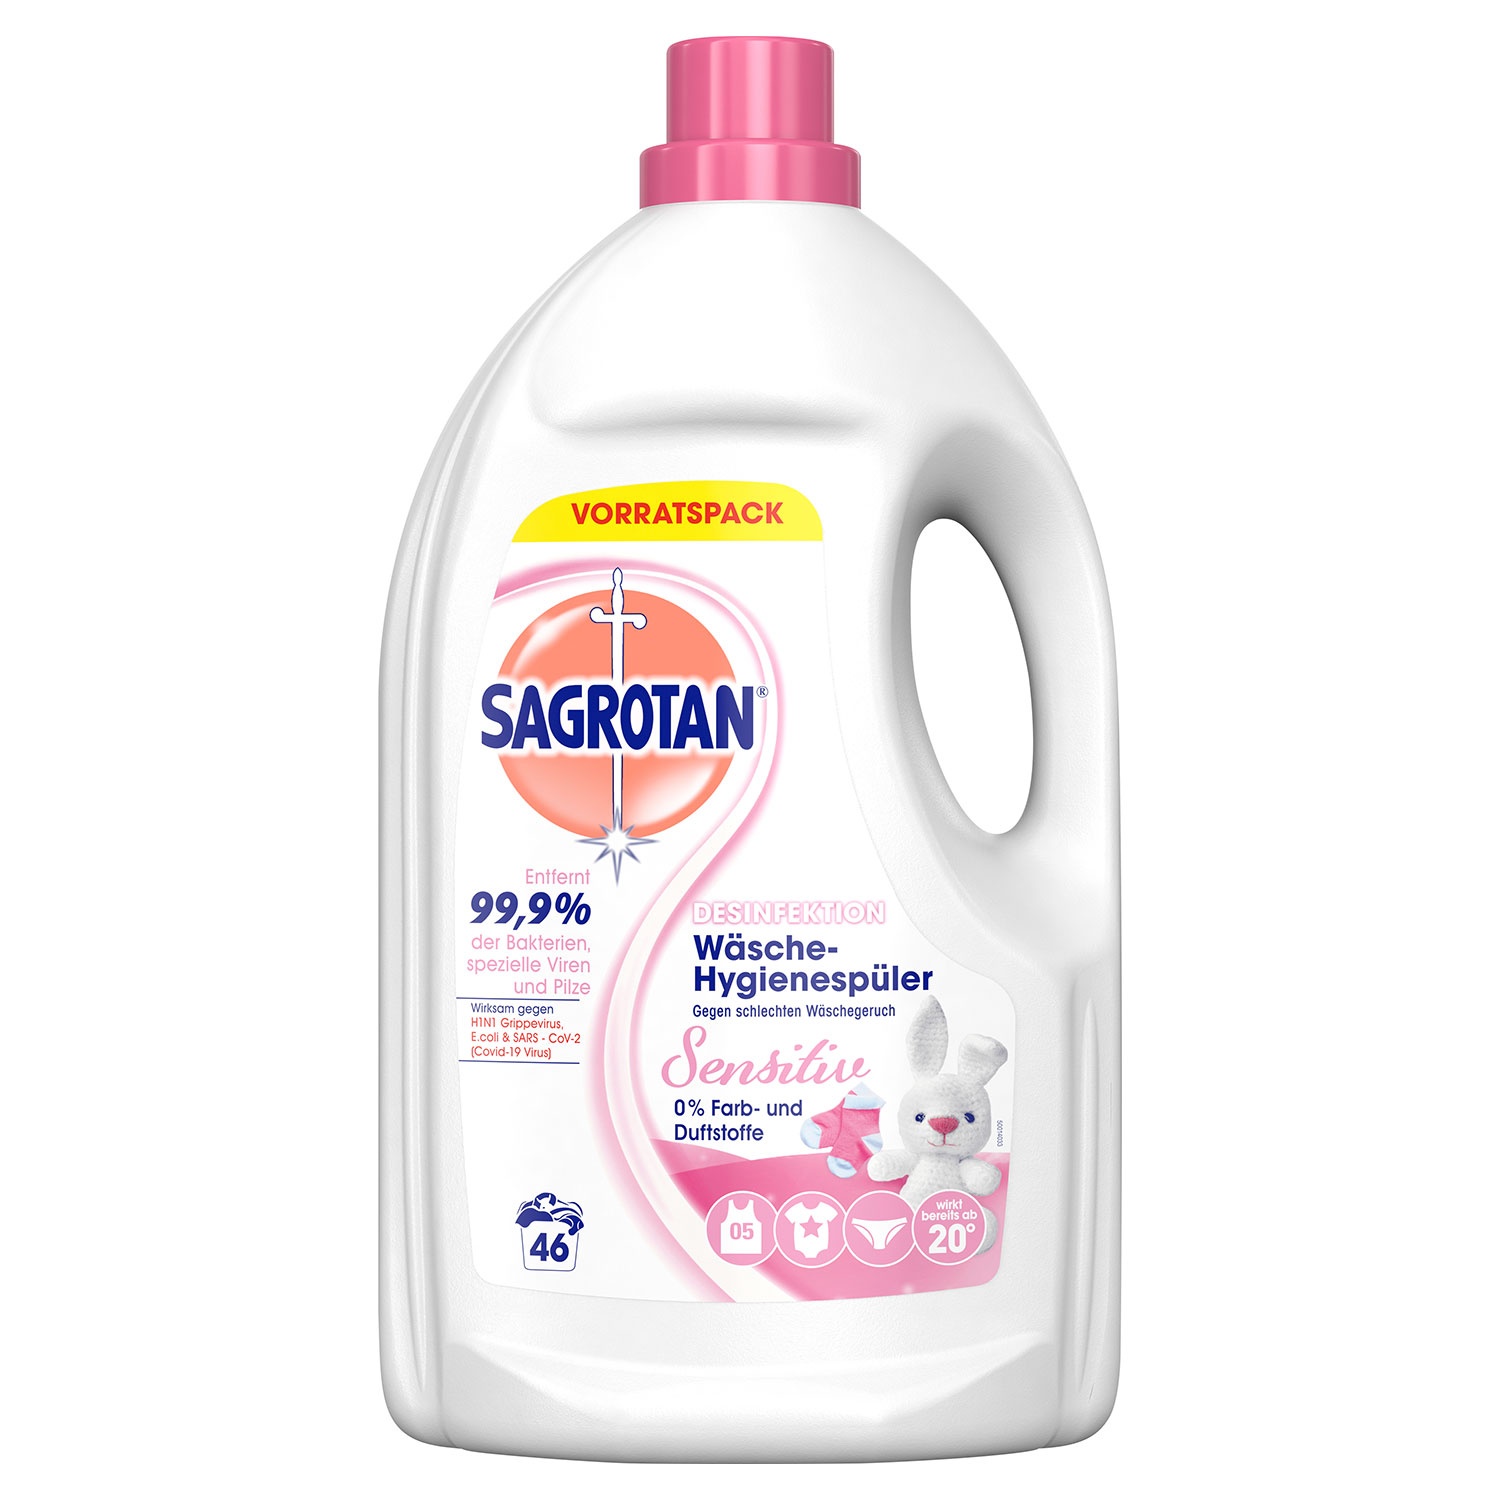 SAGROTAN® Wäsche-Hygienespüler 3,45 l